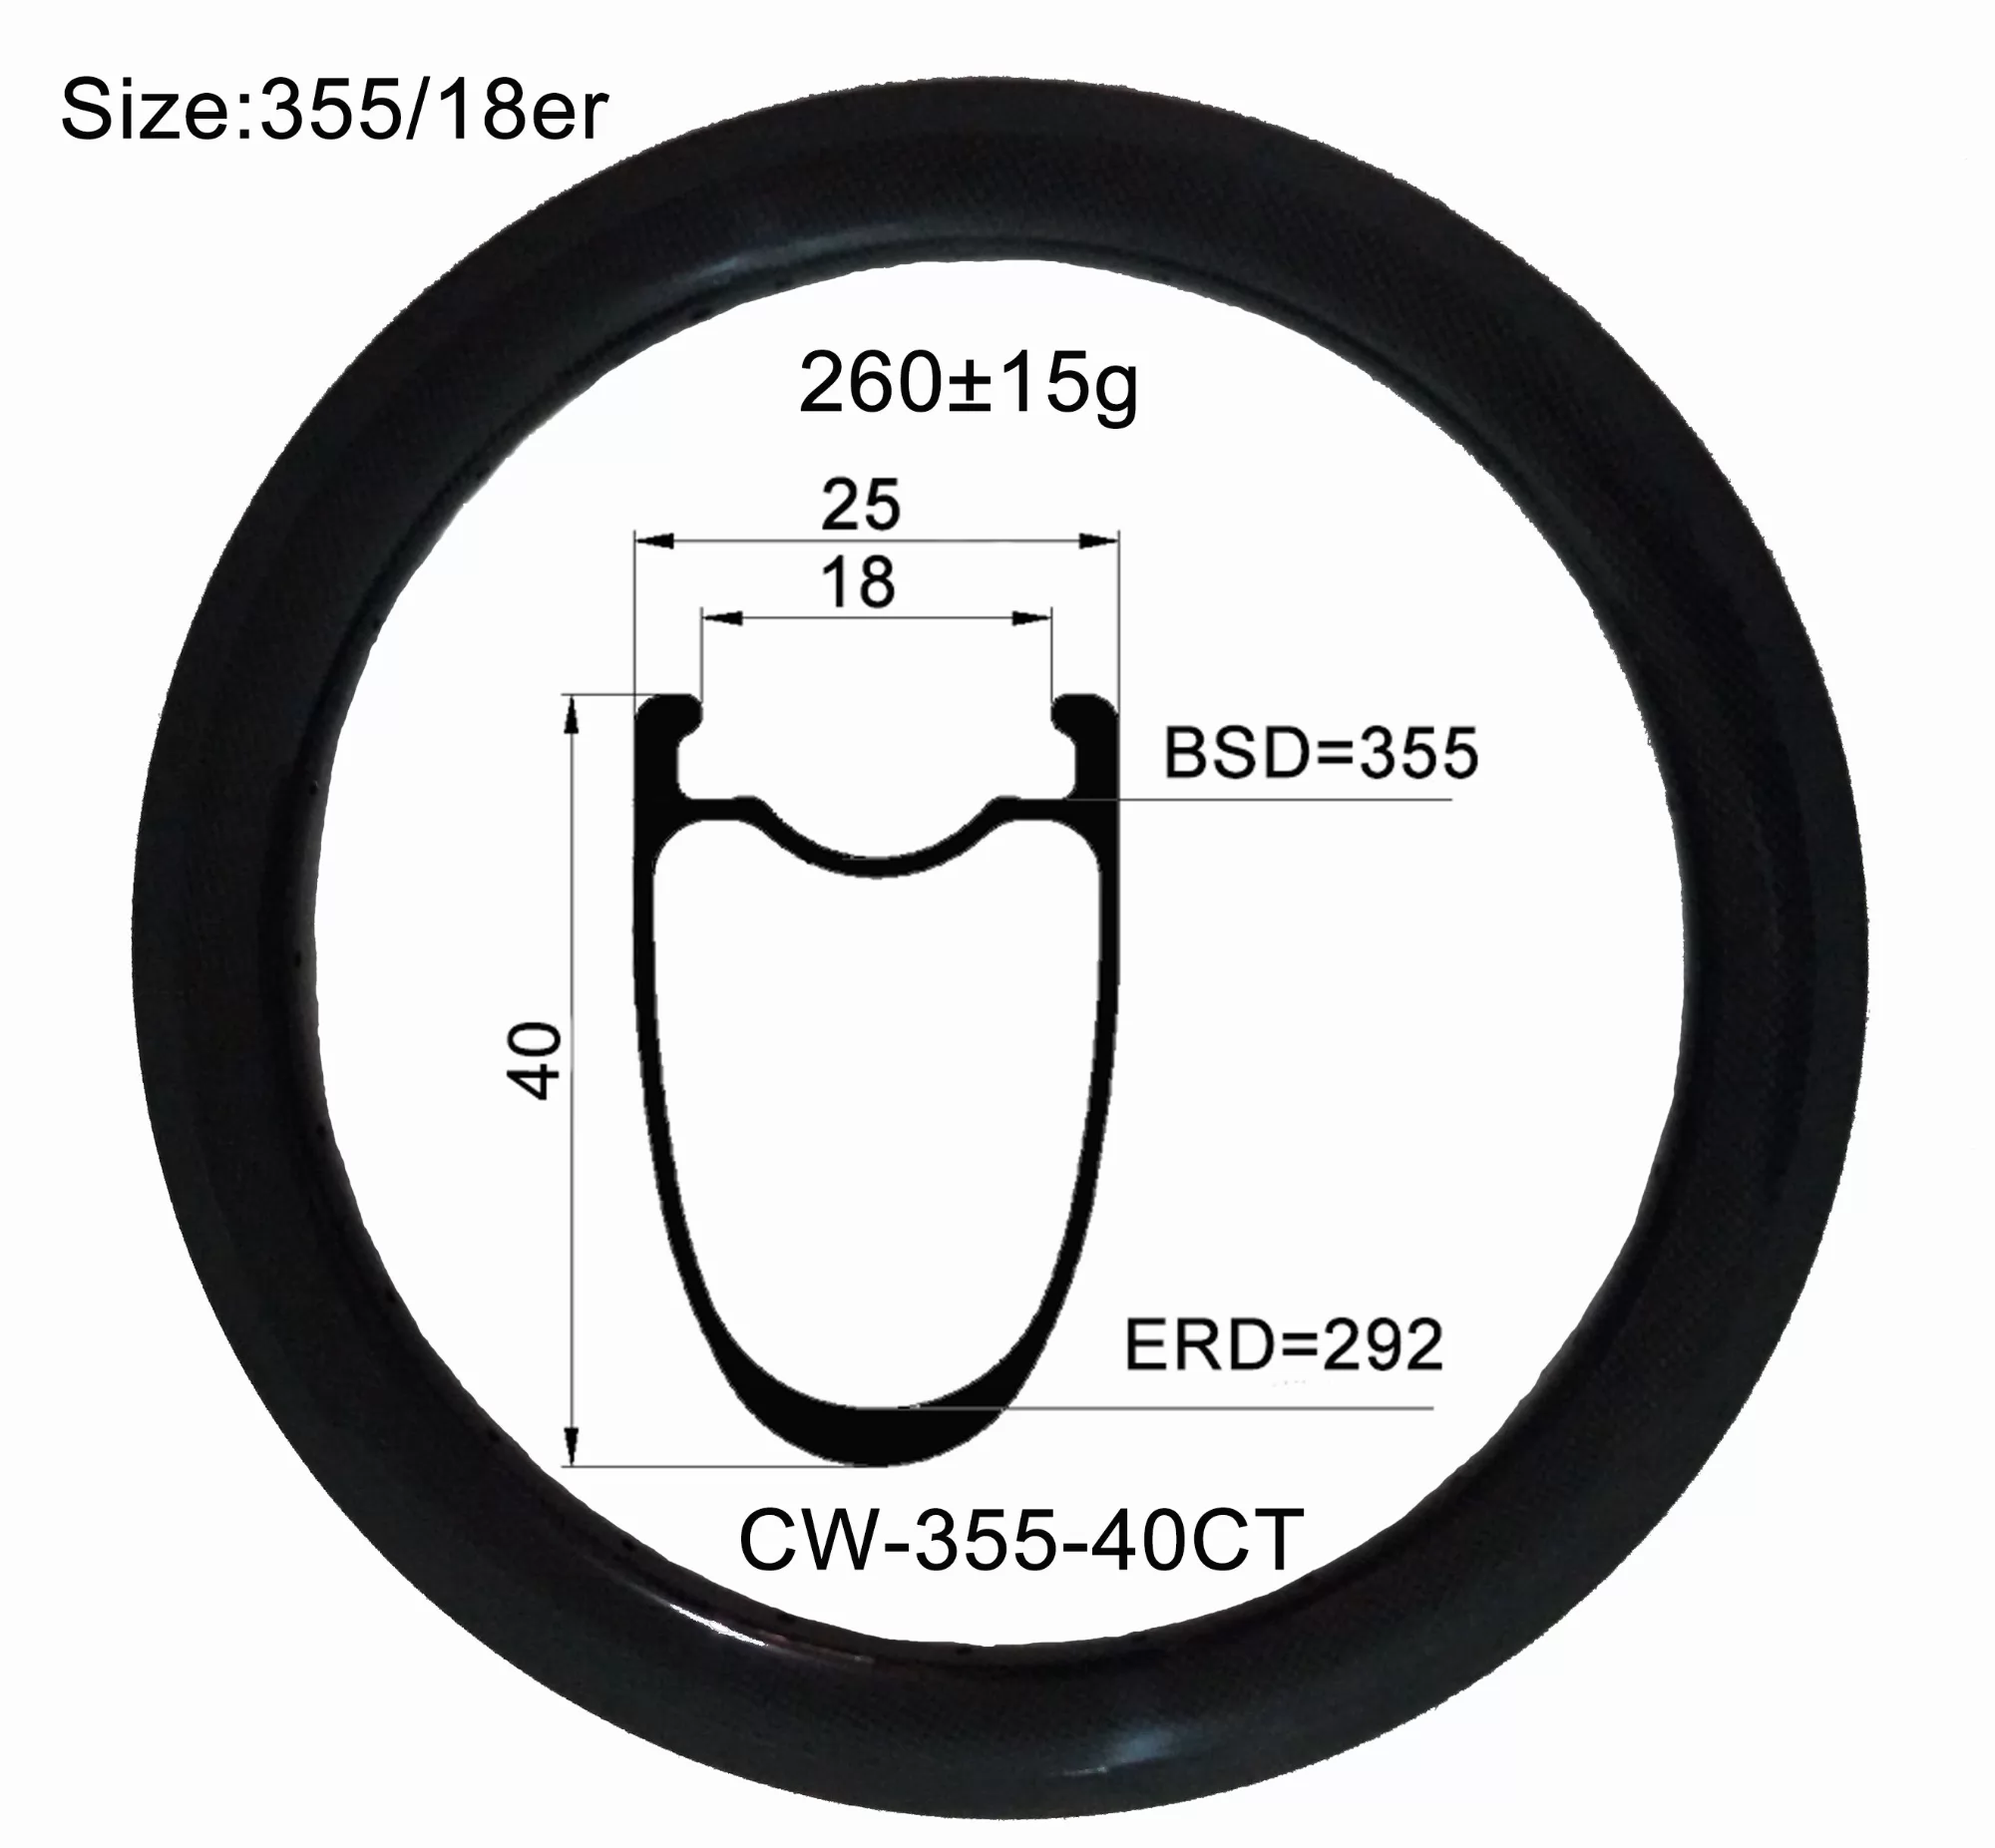 |CW355-40CT| Carbon fiber 355/18er 25mm width 40mm depth BMX cincher tubeless compatible rim V brake/Disc brake both acception